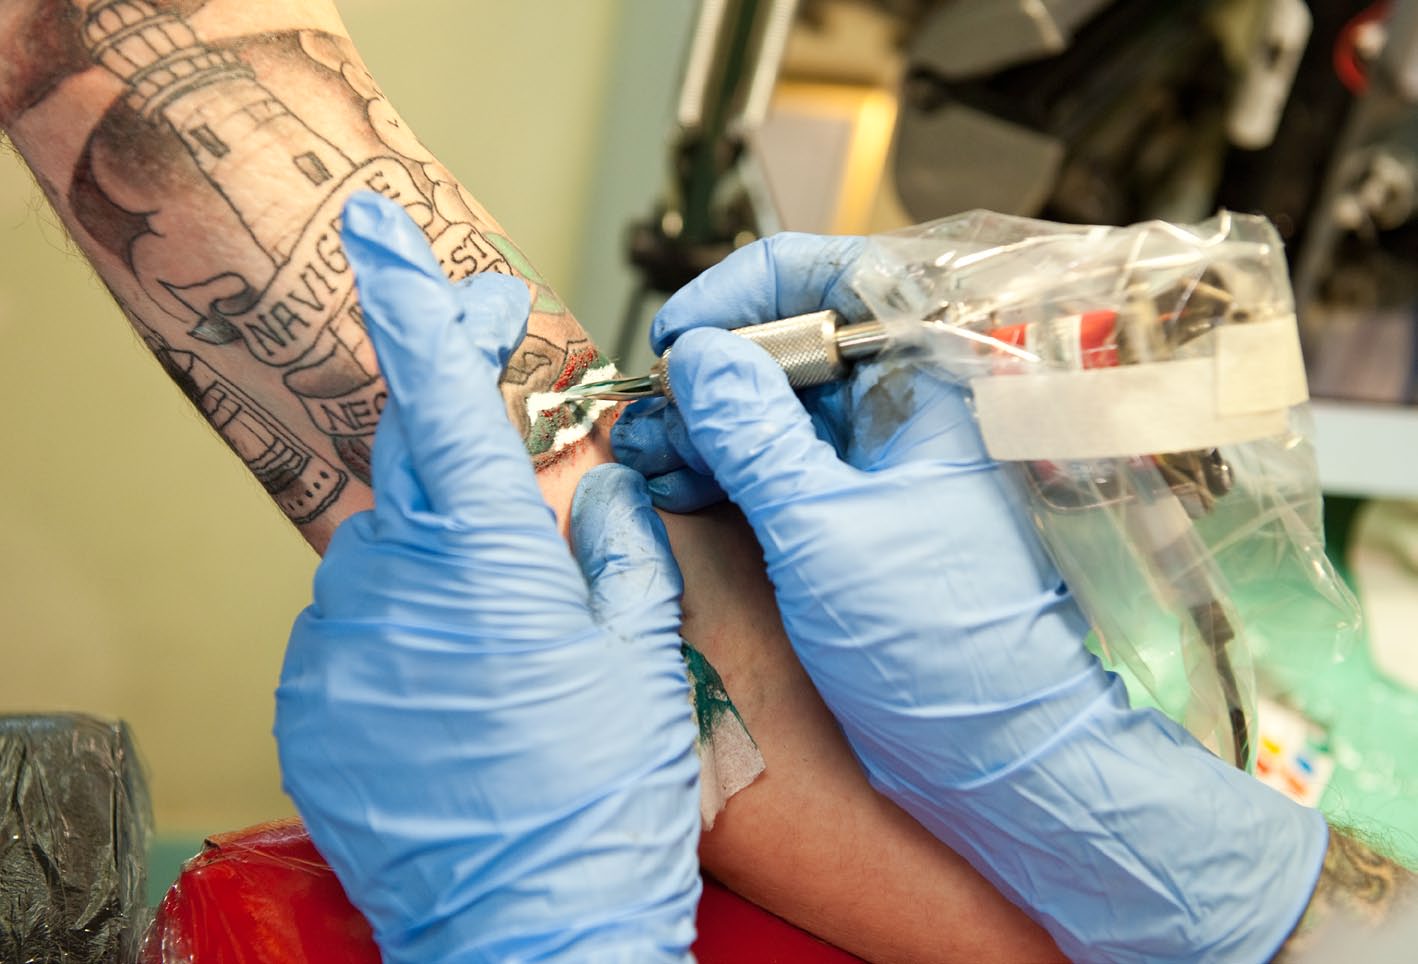 Tatuering Att tatuera sig tar tid och gör ont. Det blöder. Hur mycket beror på var man tatuerar sig och hur tatueringen ser ut.